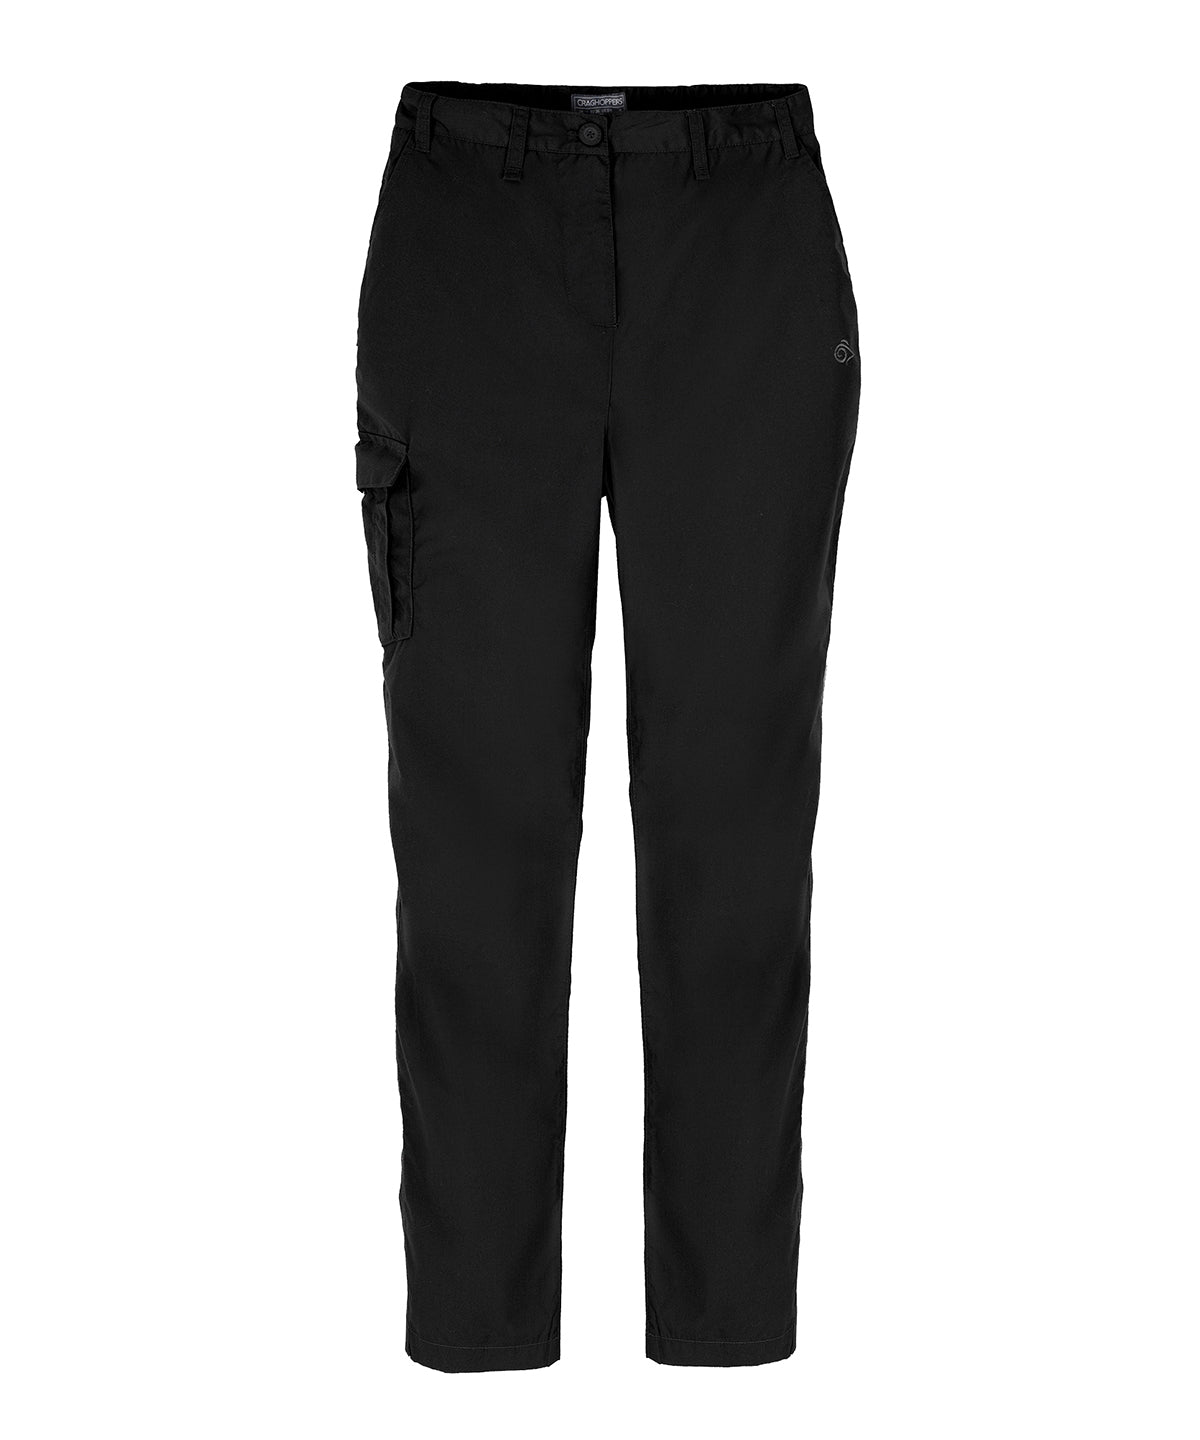 Expert womens Kiwi trousers | Black